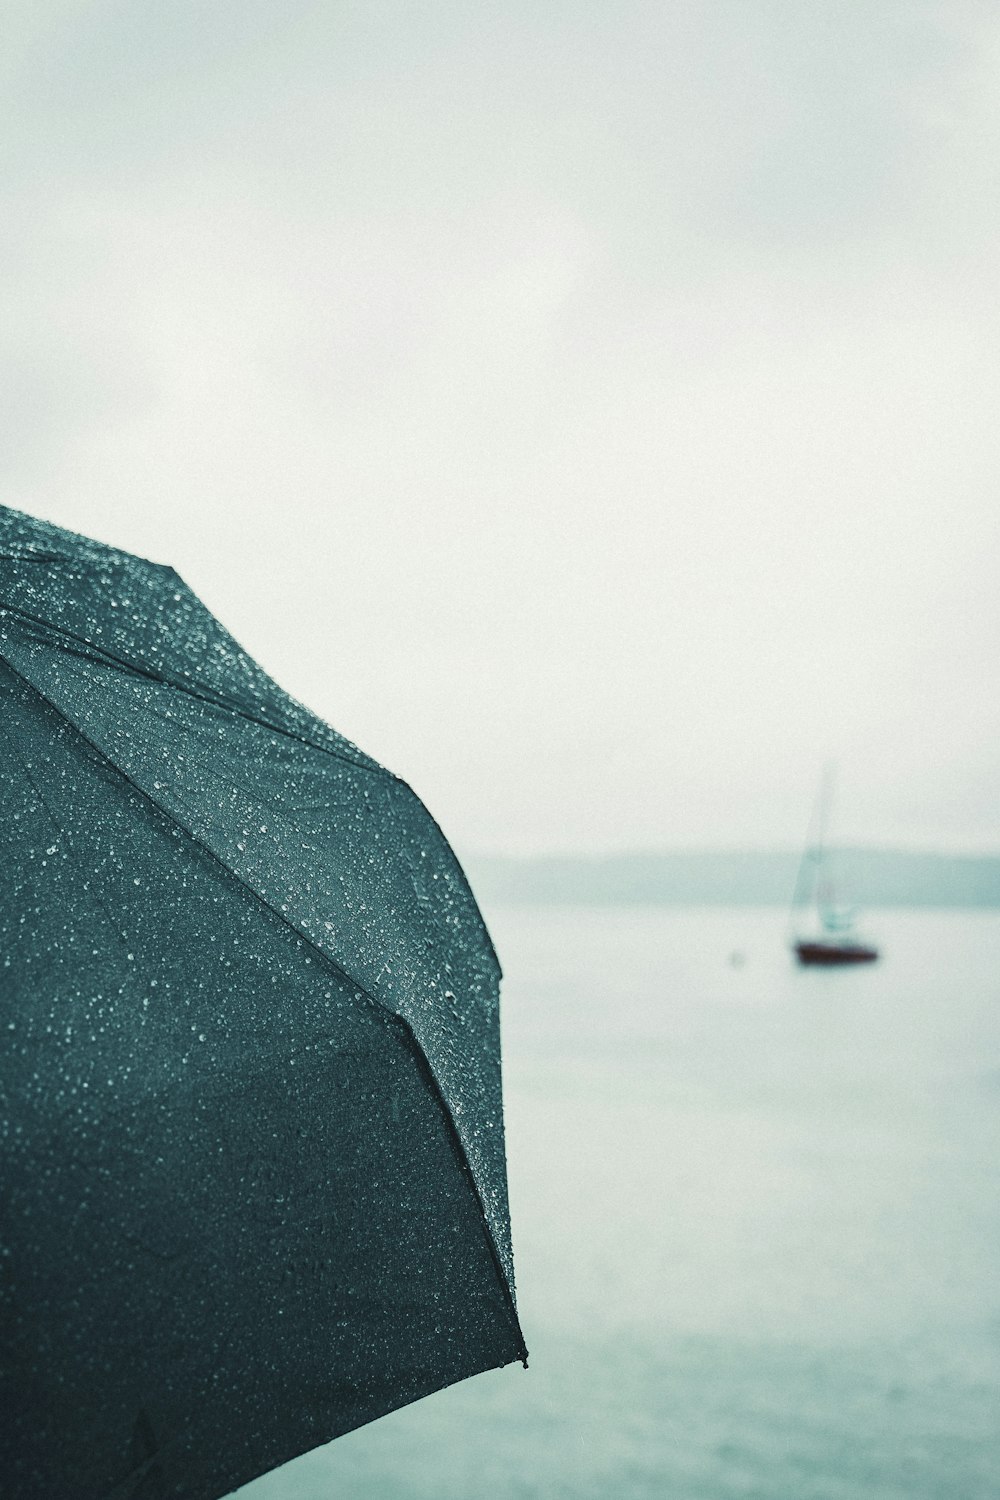 parapluie noir près d’un plan d’eau pendant la journée